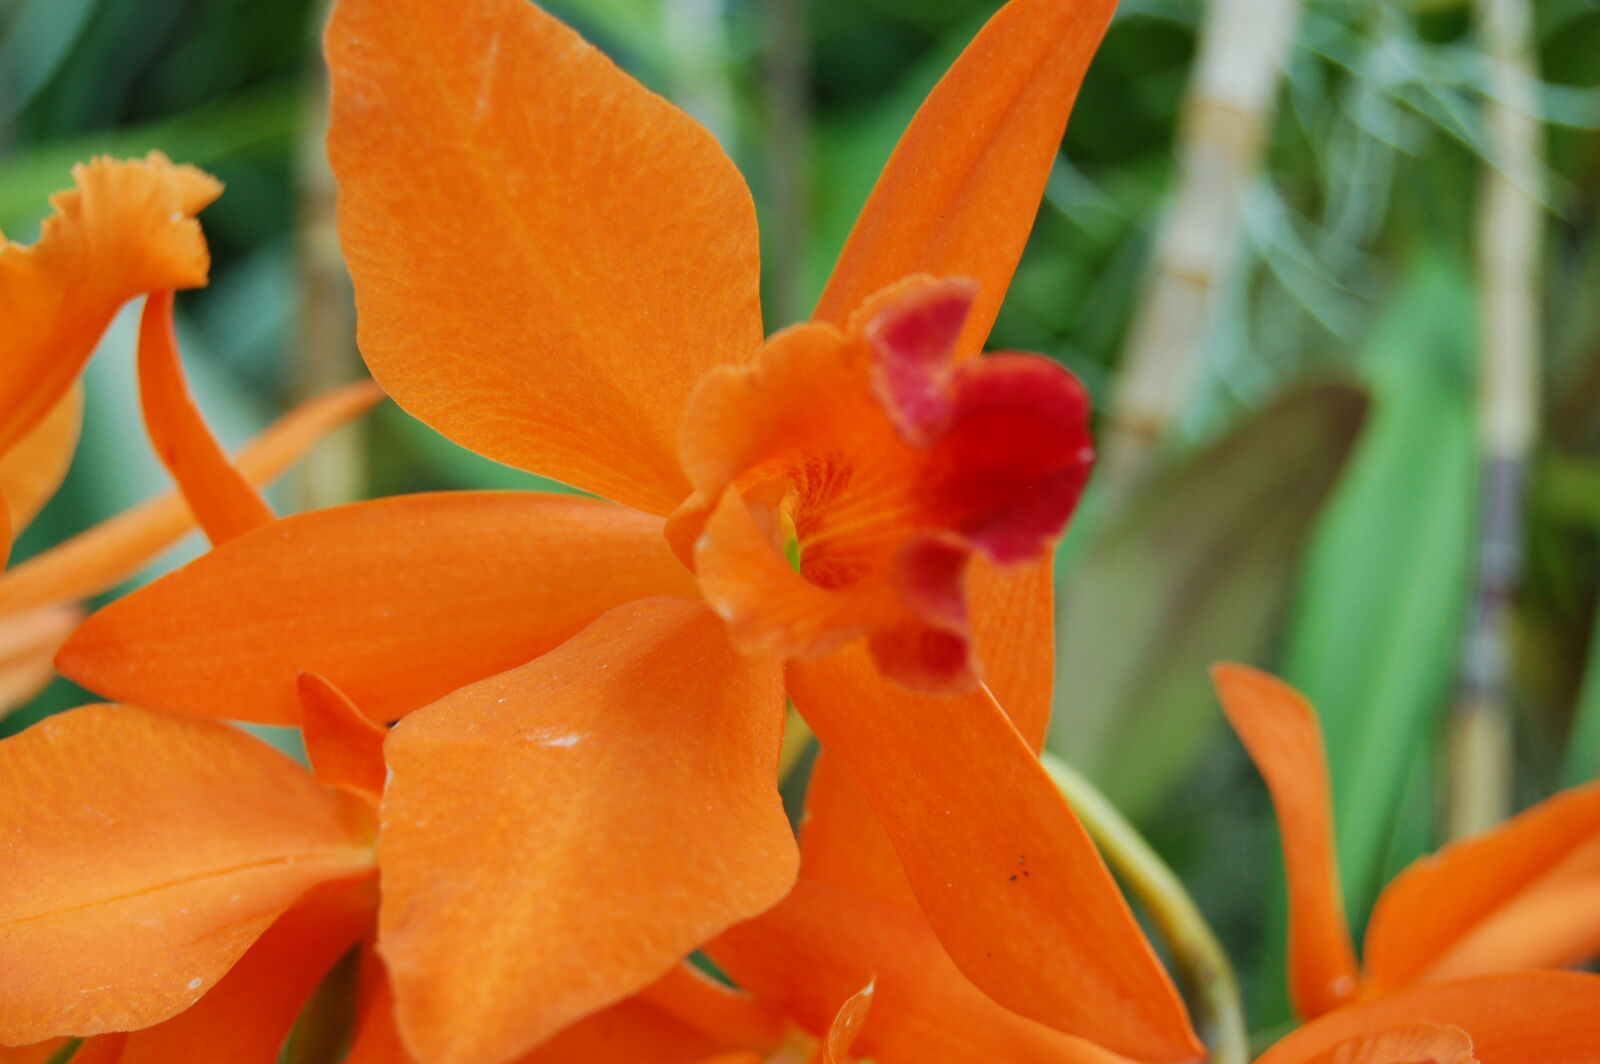 Nikon D50 + AF-S DX Zoom-Nikkor 18-55mm f/3.5-5.6G ED sample photo. Flower, flowers, orange, orchid photography